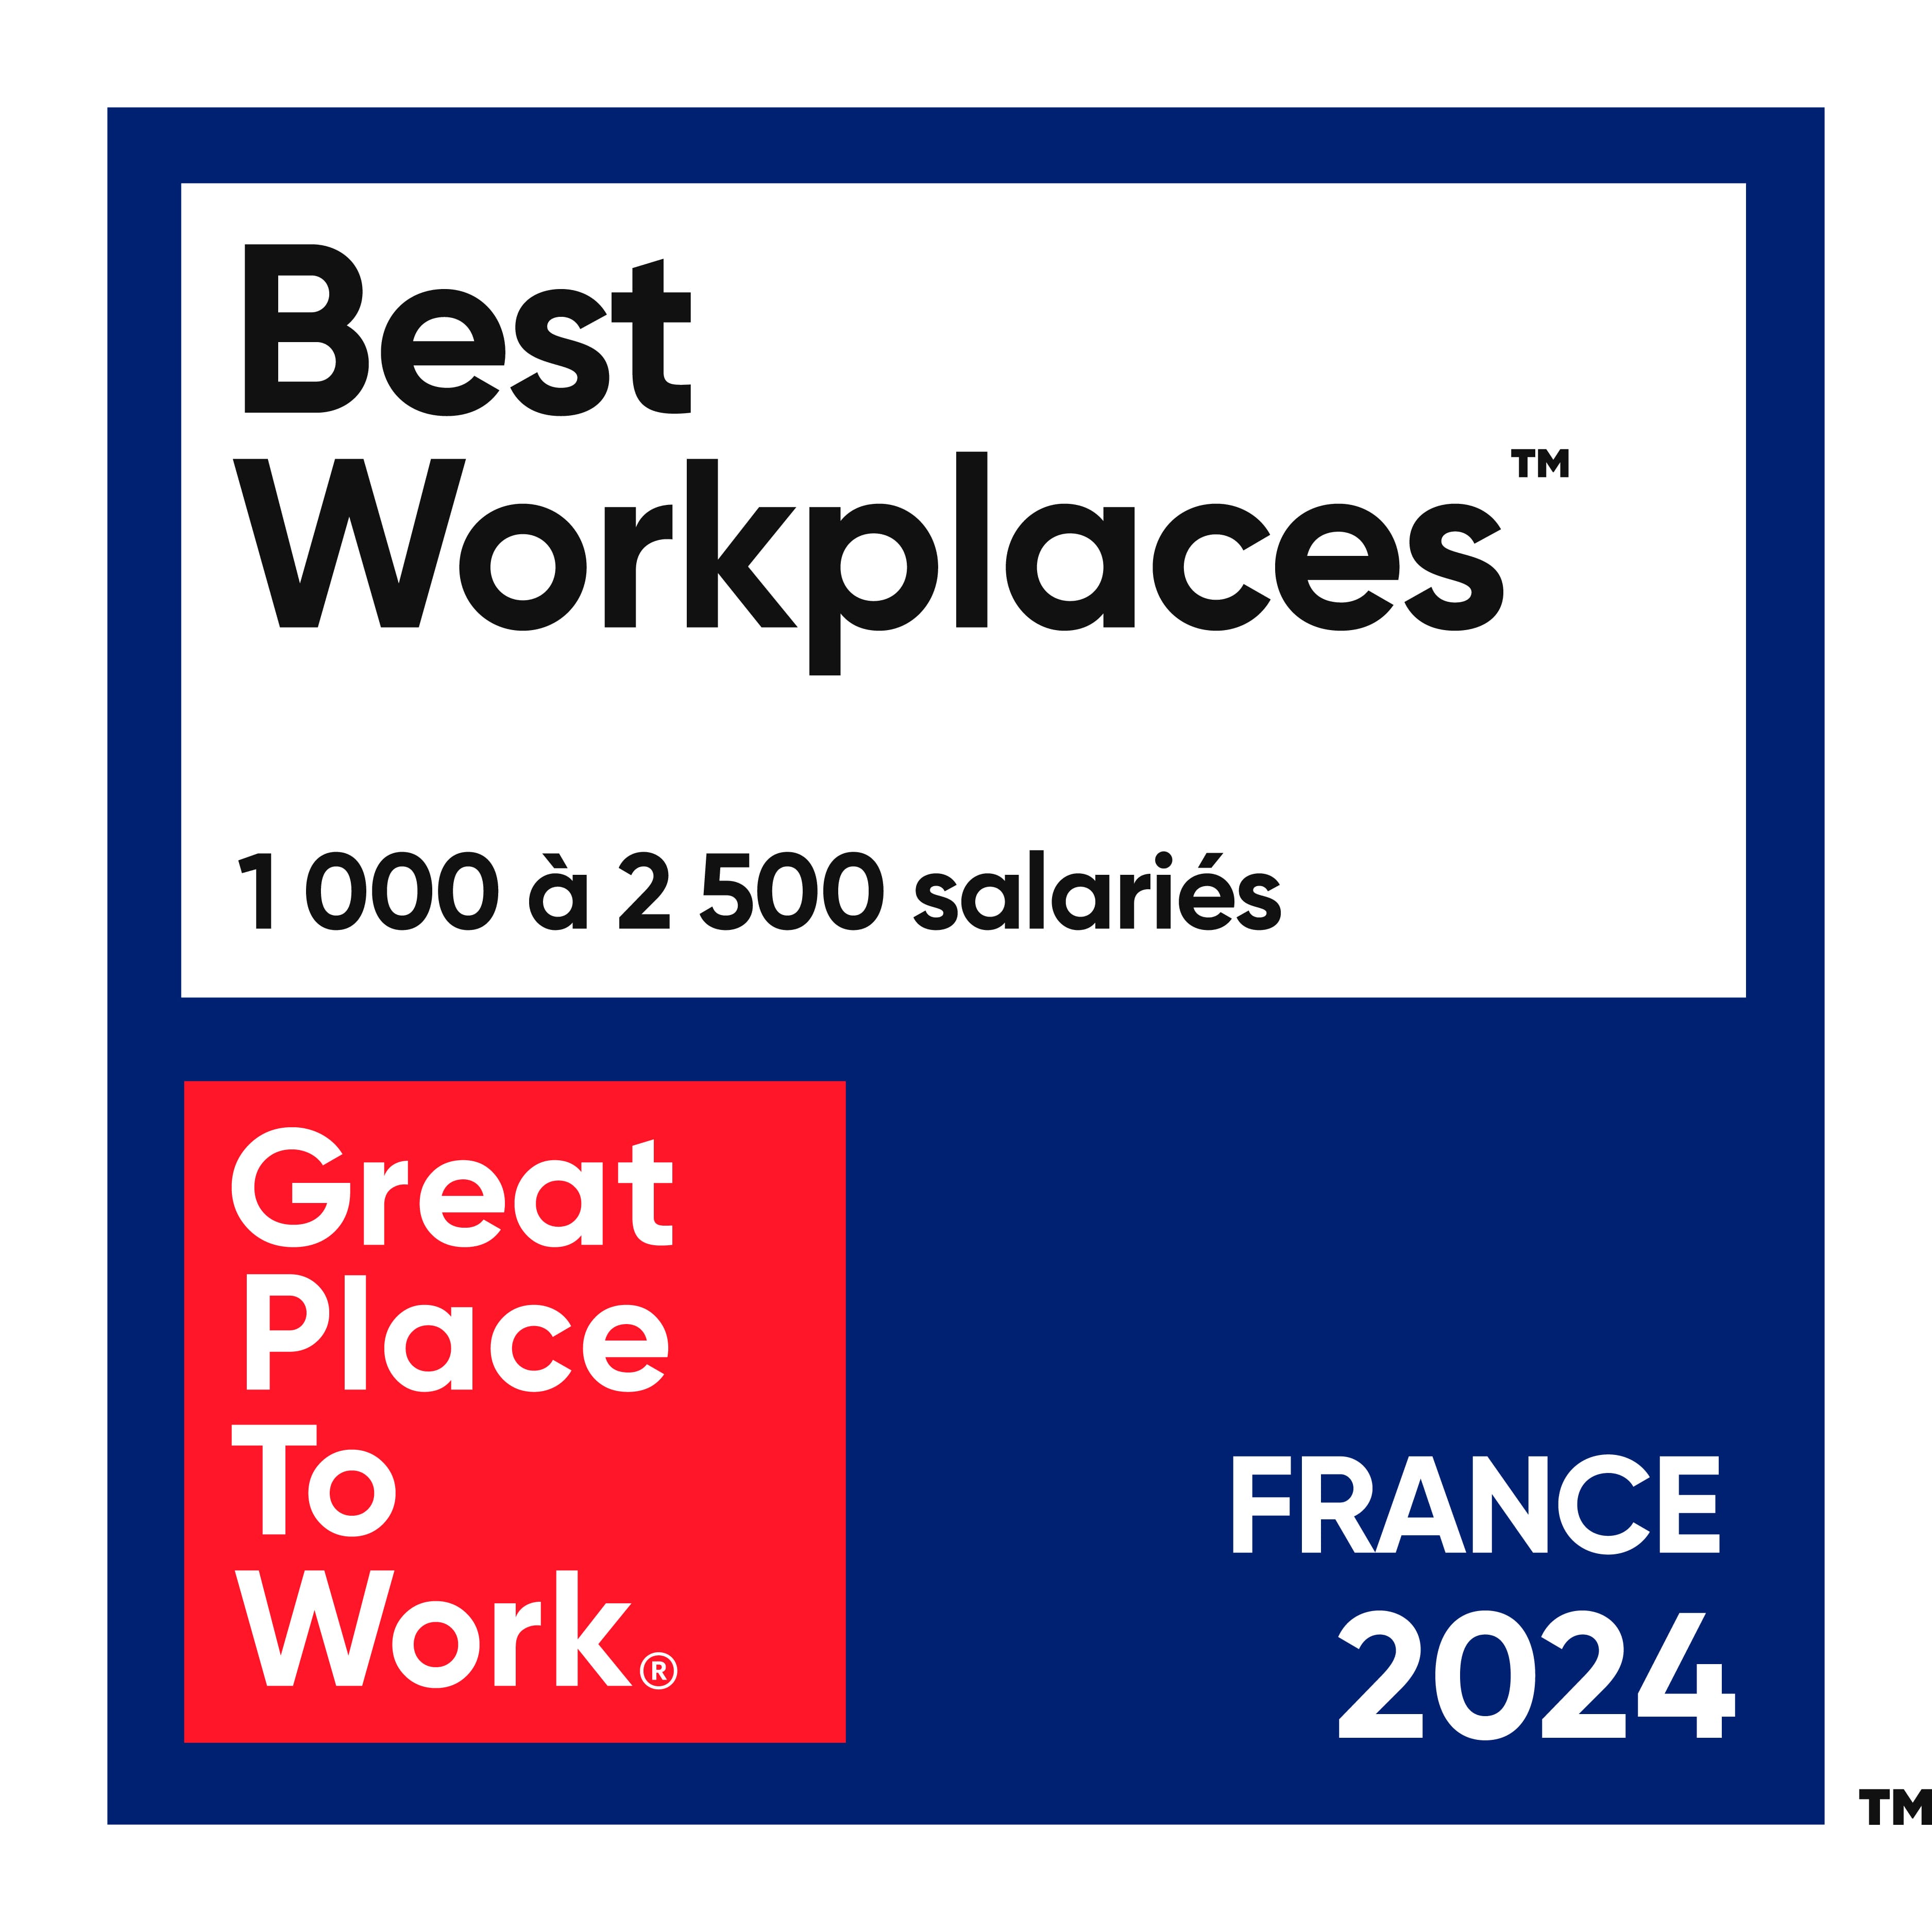 Best Workplaces 1000 à 2500 salariés. Great Place to Work. France 2023